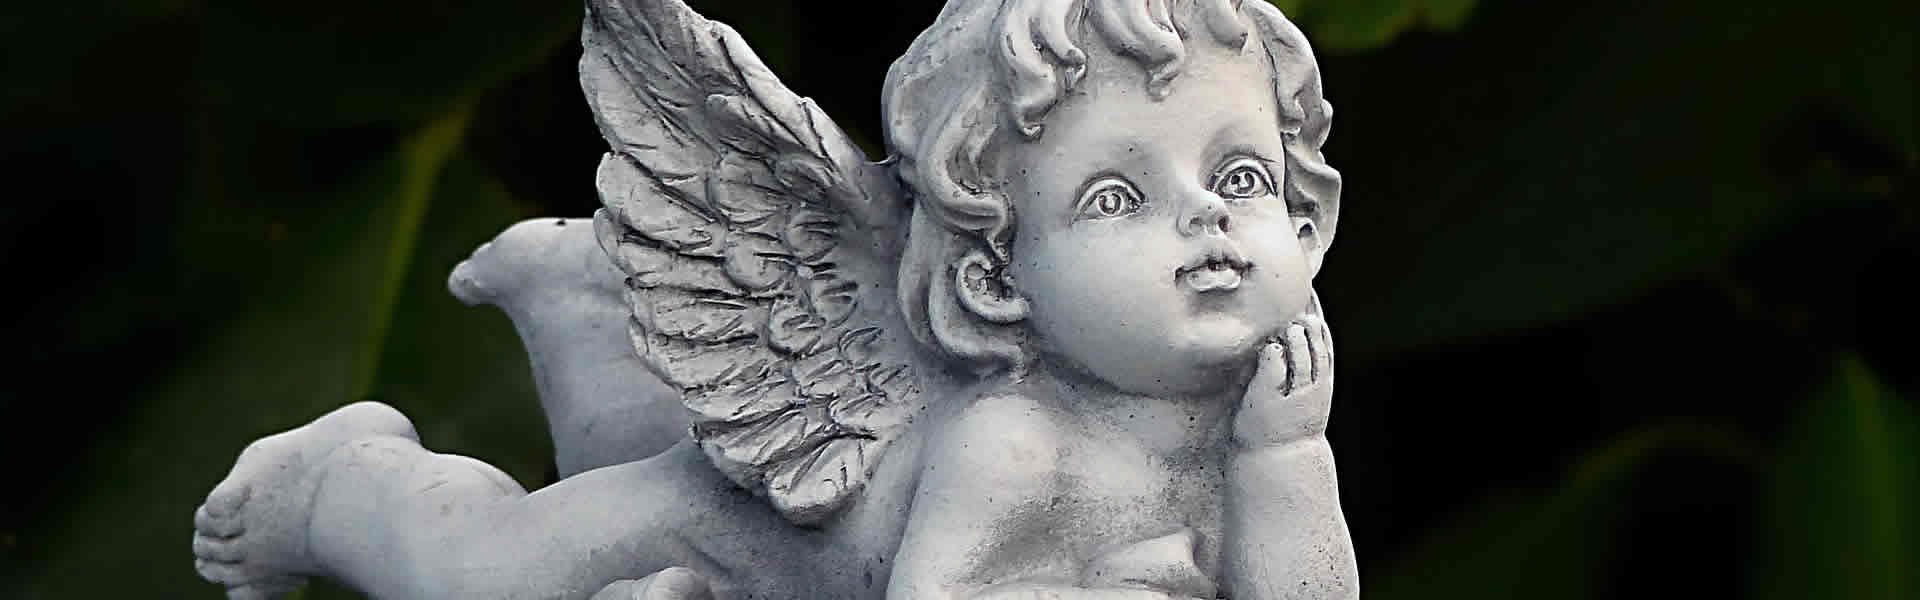 Statua funebre di un angelo per cimitero